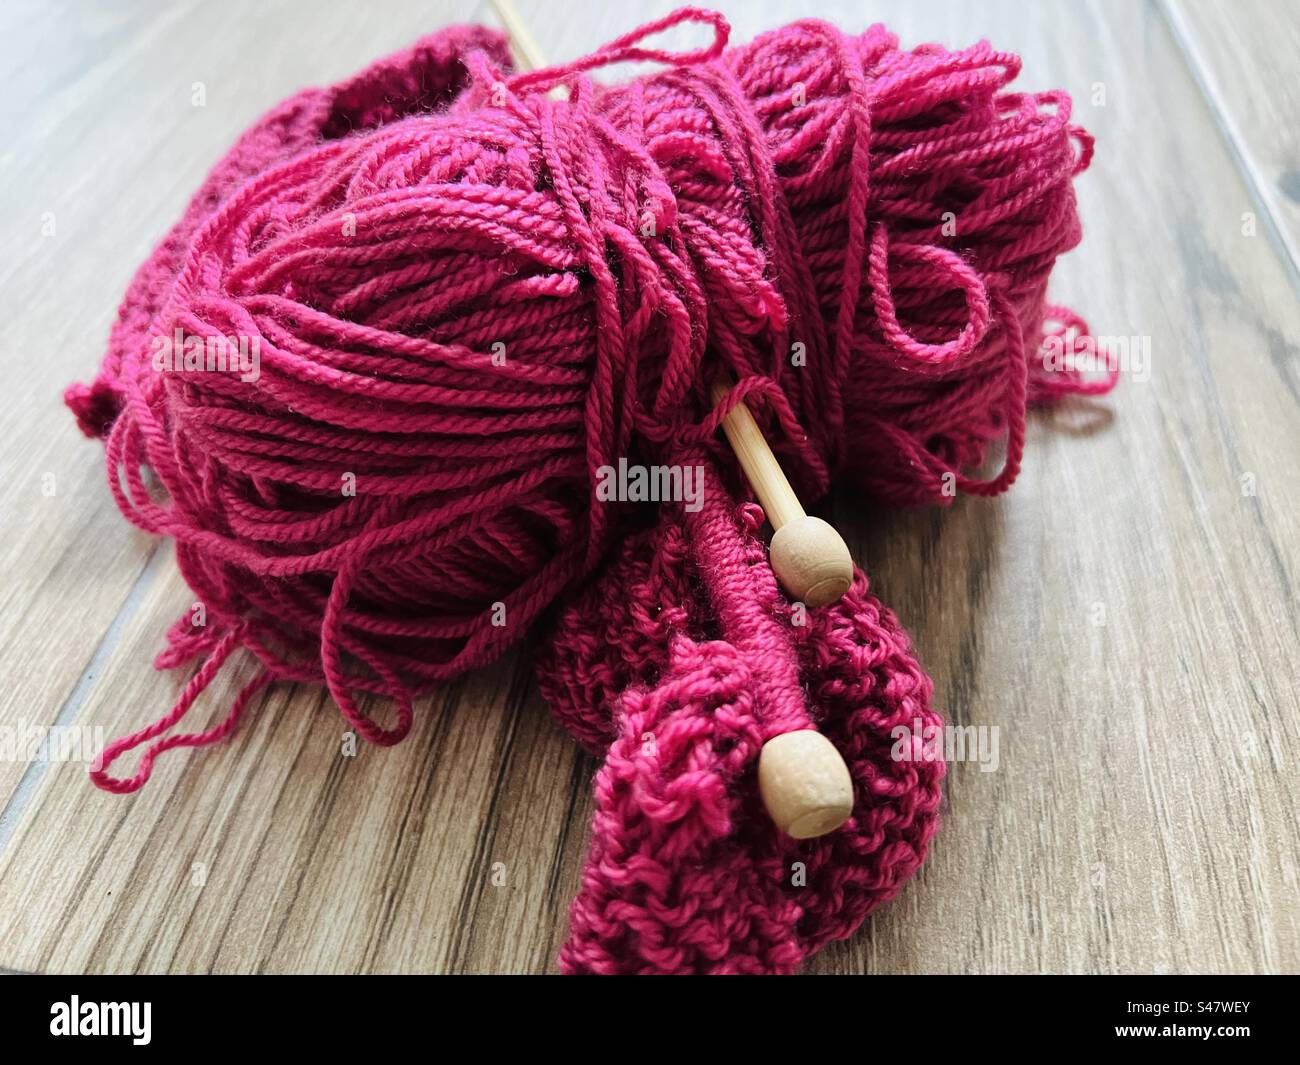 Une boule de laine rose framboise avec des aiguilles à tricoter Banque D'Images